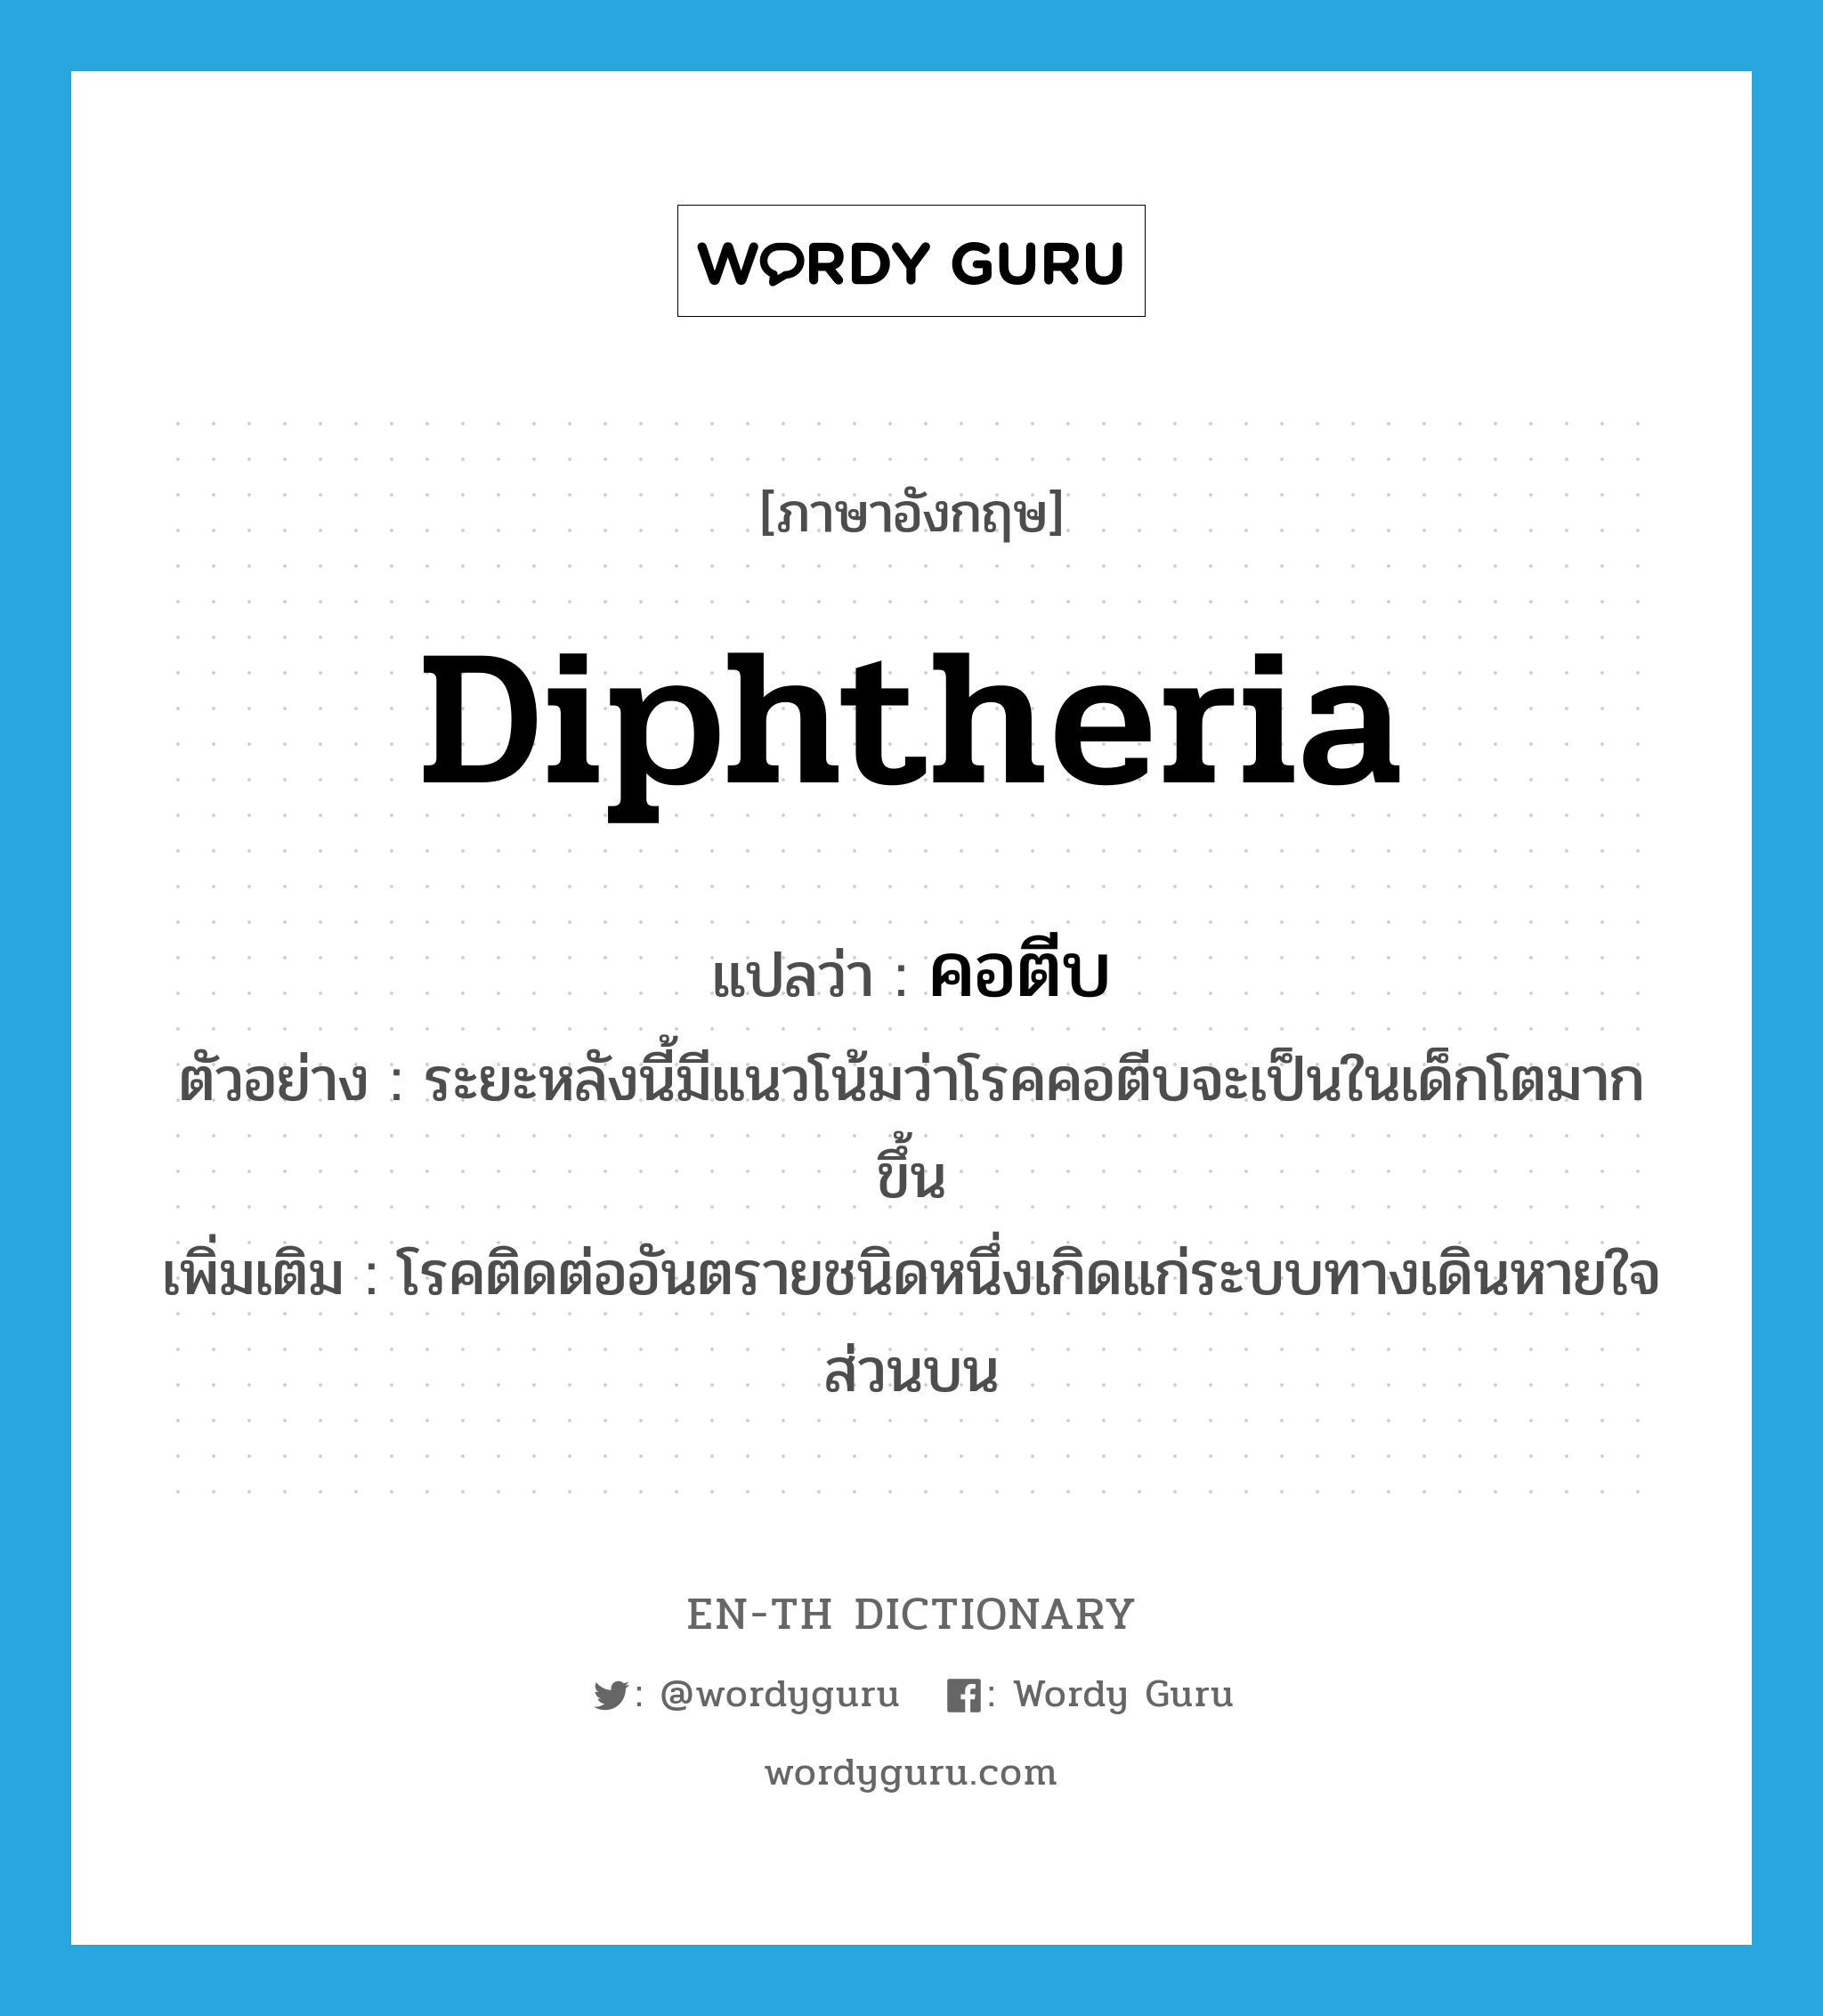 diphtheria แปลว่า?, คำศัพท์ภาษาอังกฤษ diphtheria แปลว่า คอตีบ ประเภท N ตัวอย่าง ระยะหลังนี้มีแนวโน้มว่าโรคคอตีบจะเป็นในเด็กโตมากขึ้น เพิ่มเติม โรคติดต่ออันตรายชนิดหนึ่งเกิดแก่ระบบทางเดินหายใจส่วนบน หมวด N